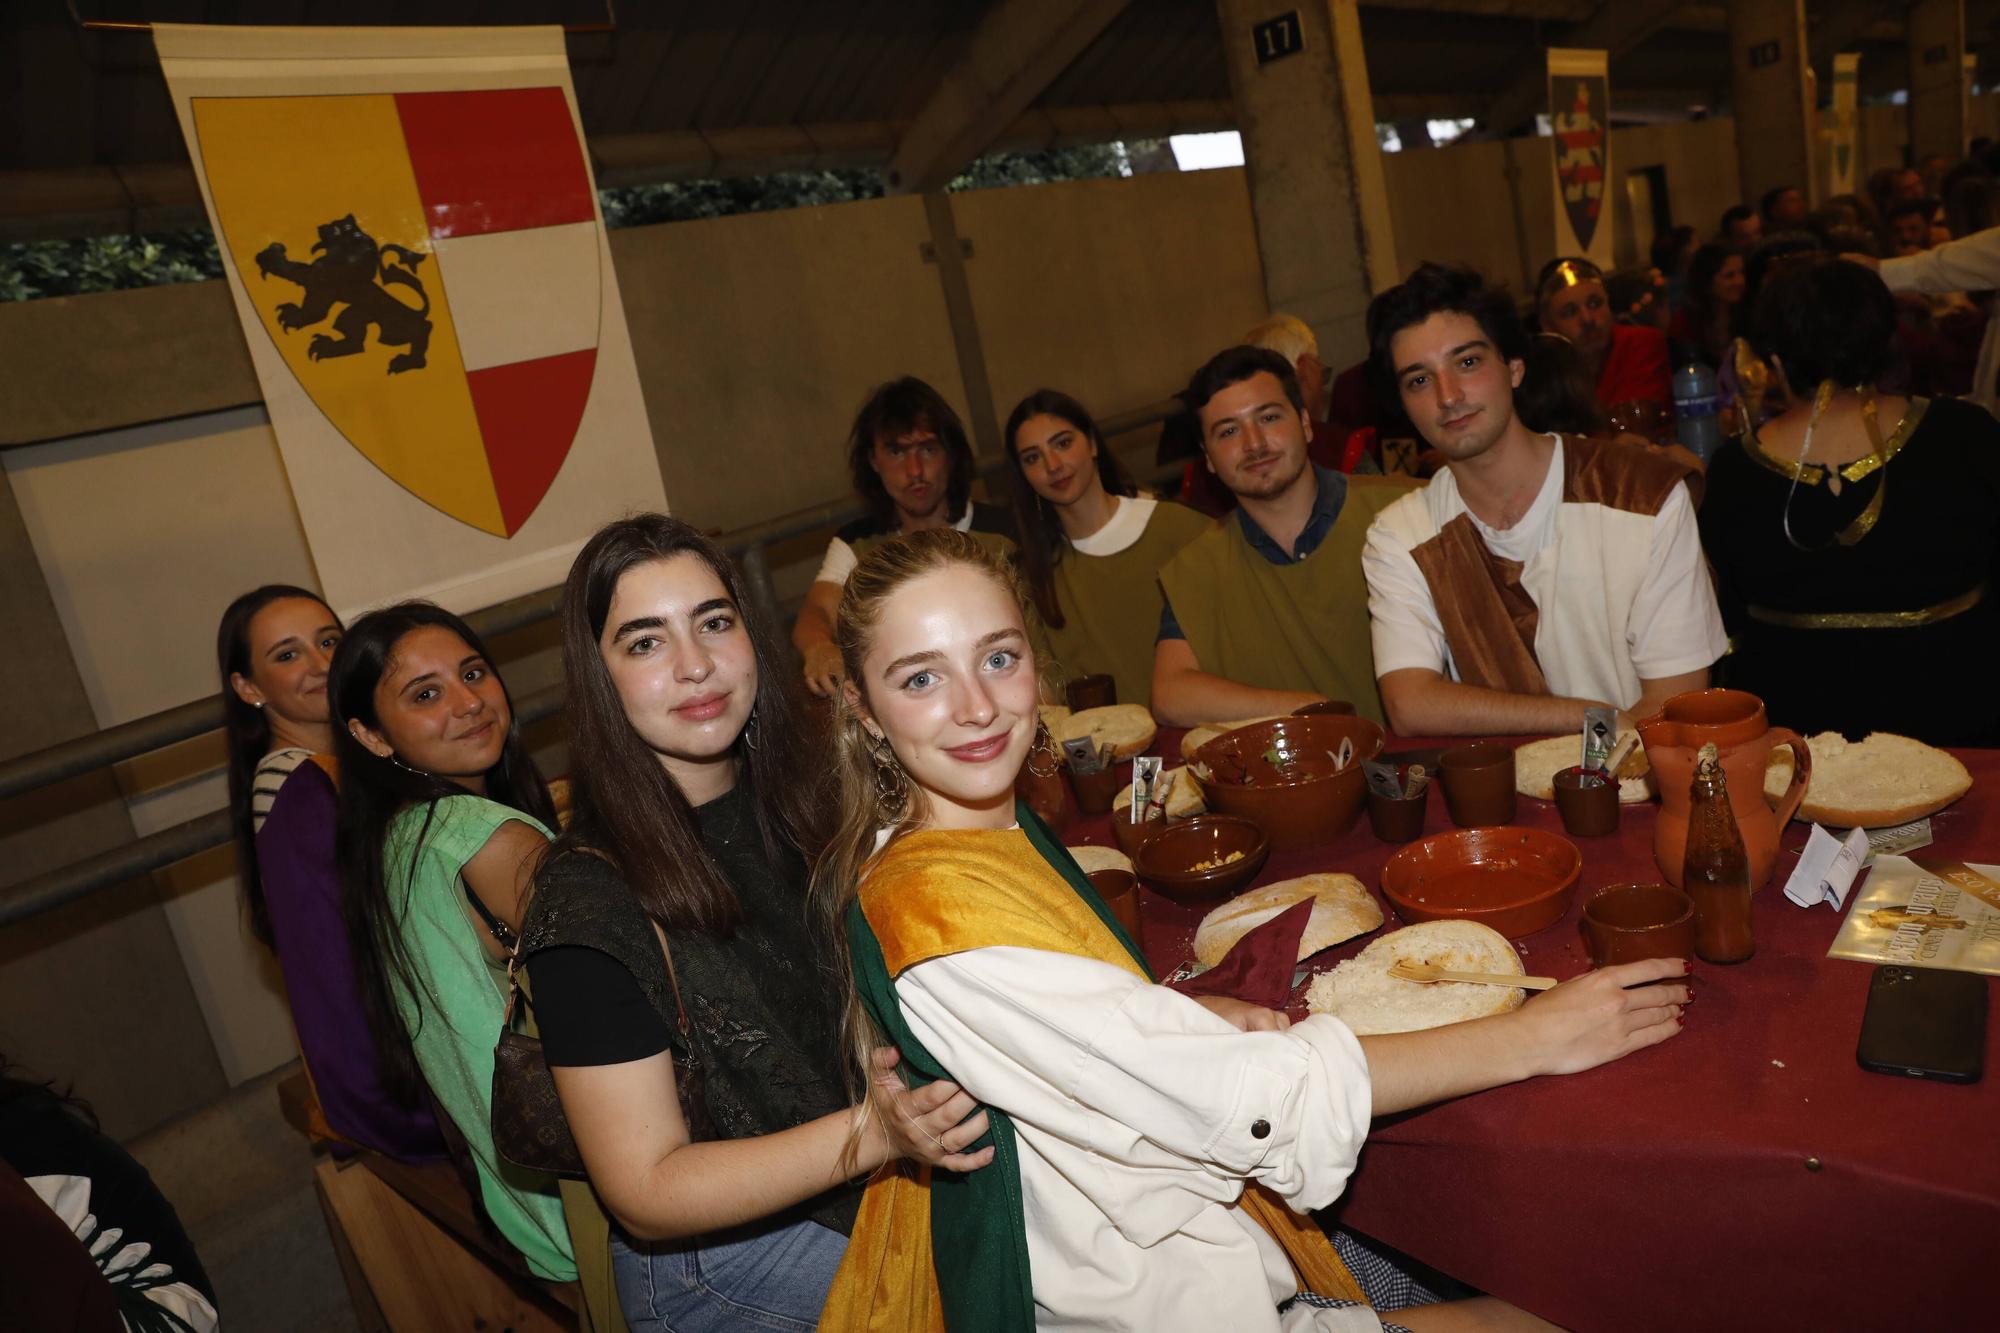 Exconxuraos hasta la bandera: espectacular noche en Llanera, con la gran cena medieval y la fiesta del fuego